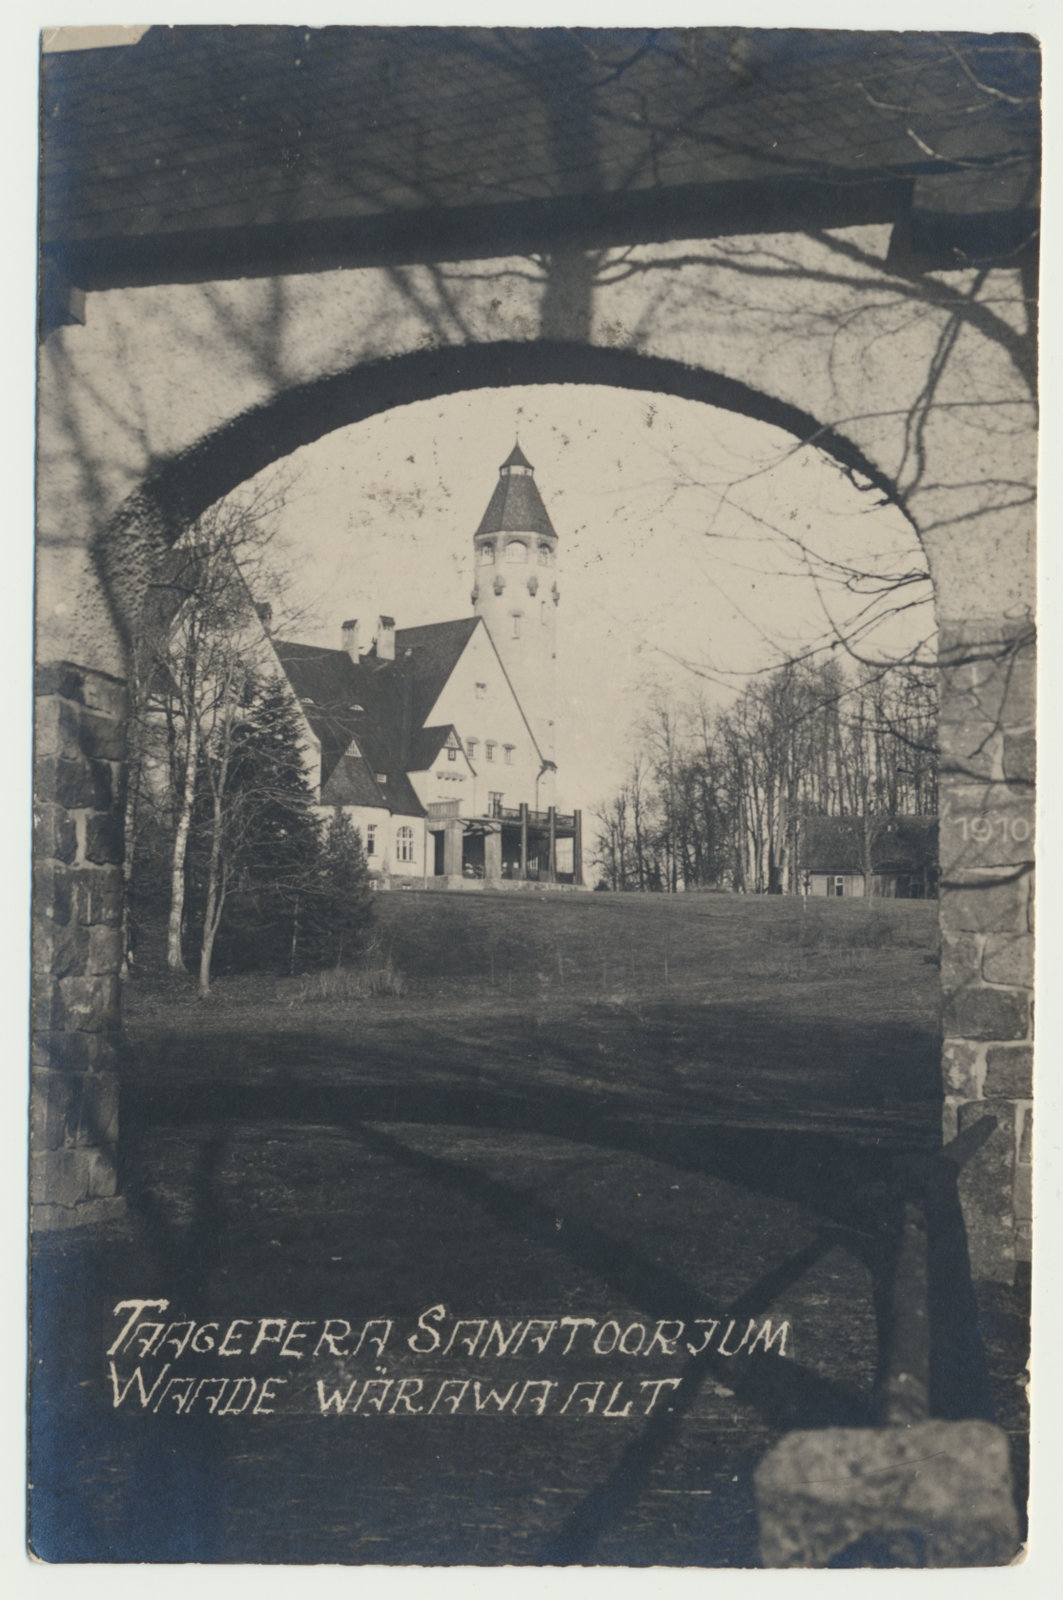 foto, Helme khk, Taagepera sanatoorium, vaade läbi sissesõidu värava u 1924